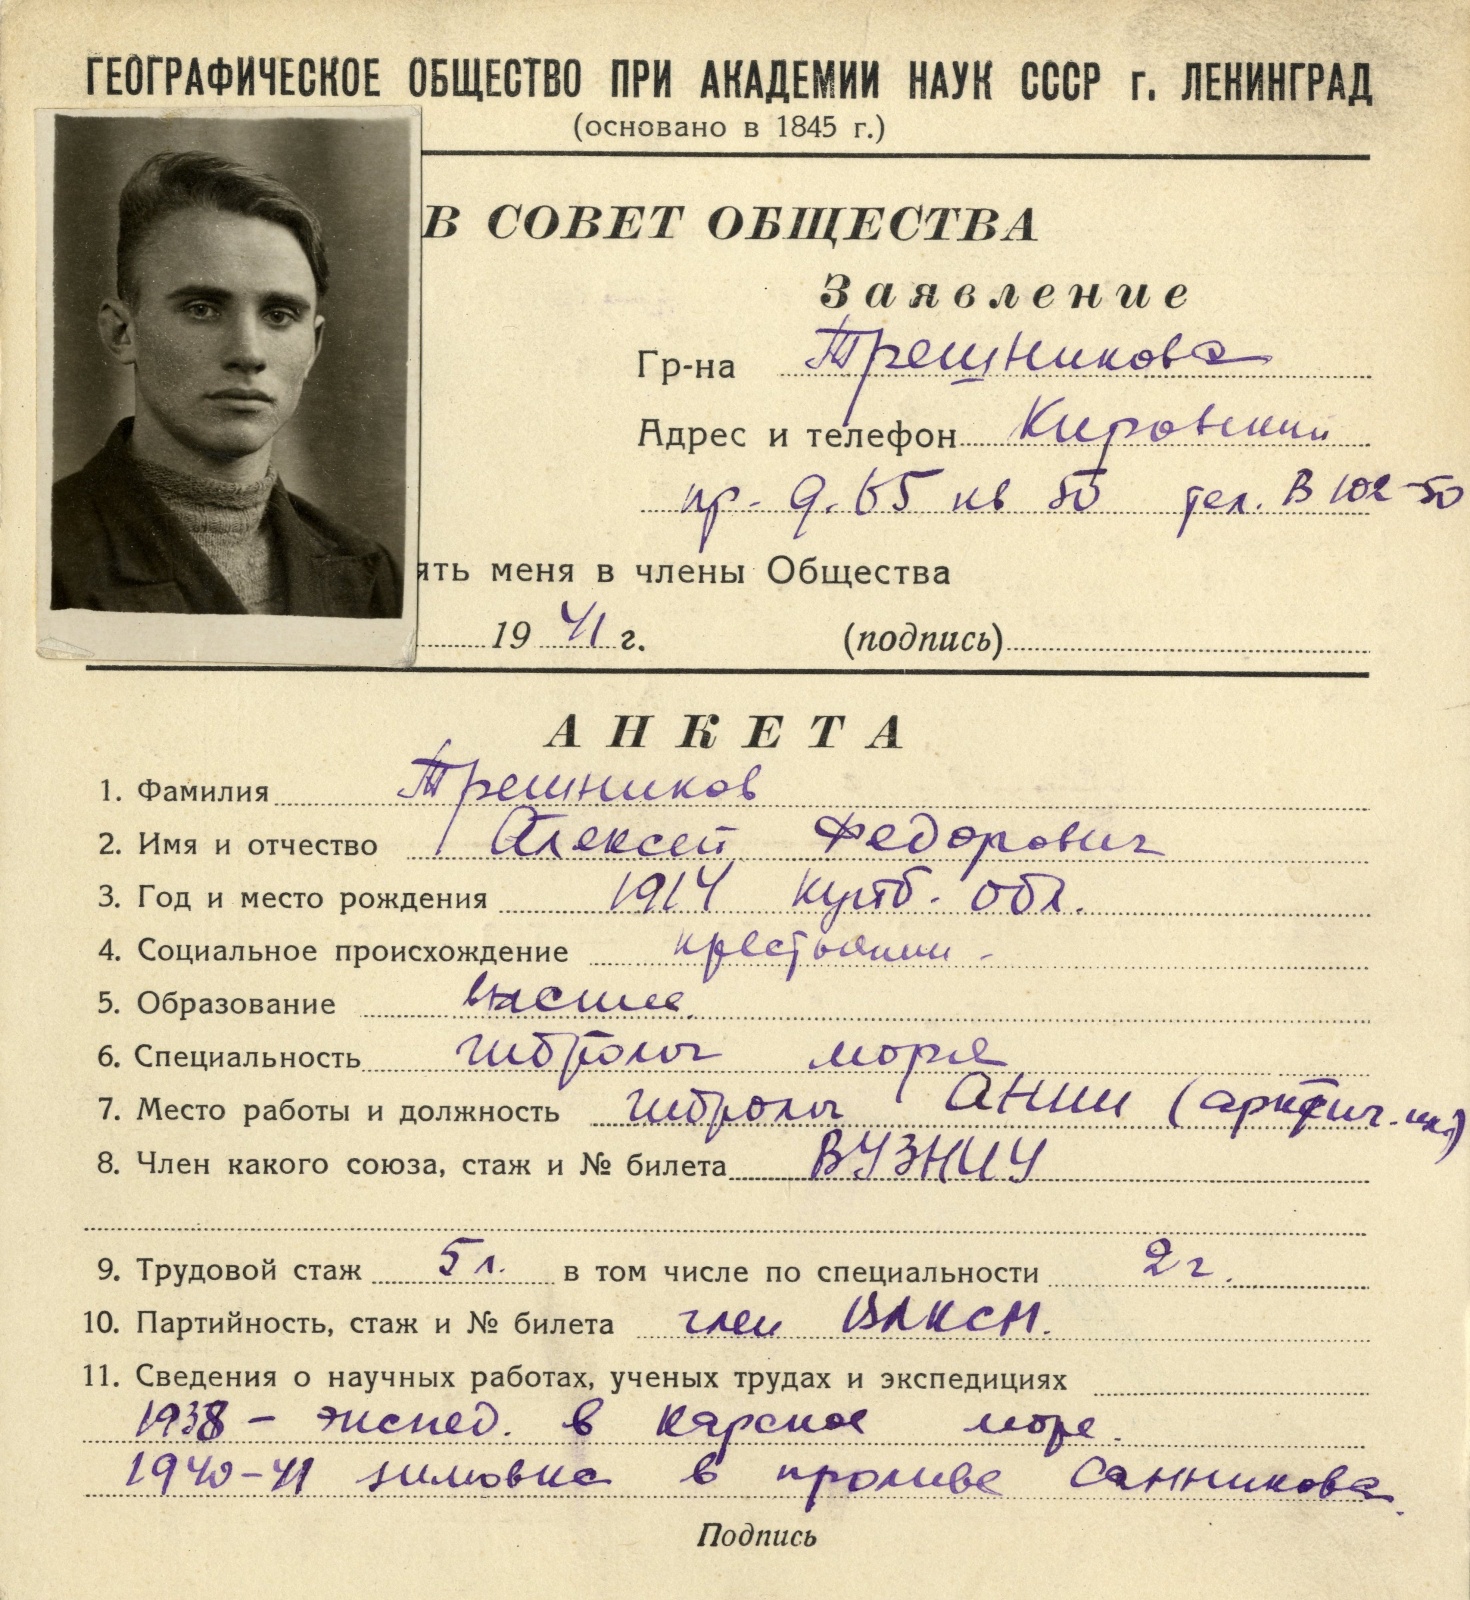 Учетная карточка А.Ф. Трешникова в Географическом обществе СССР. 1941 год.